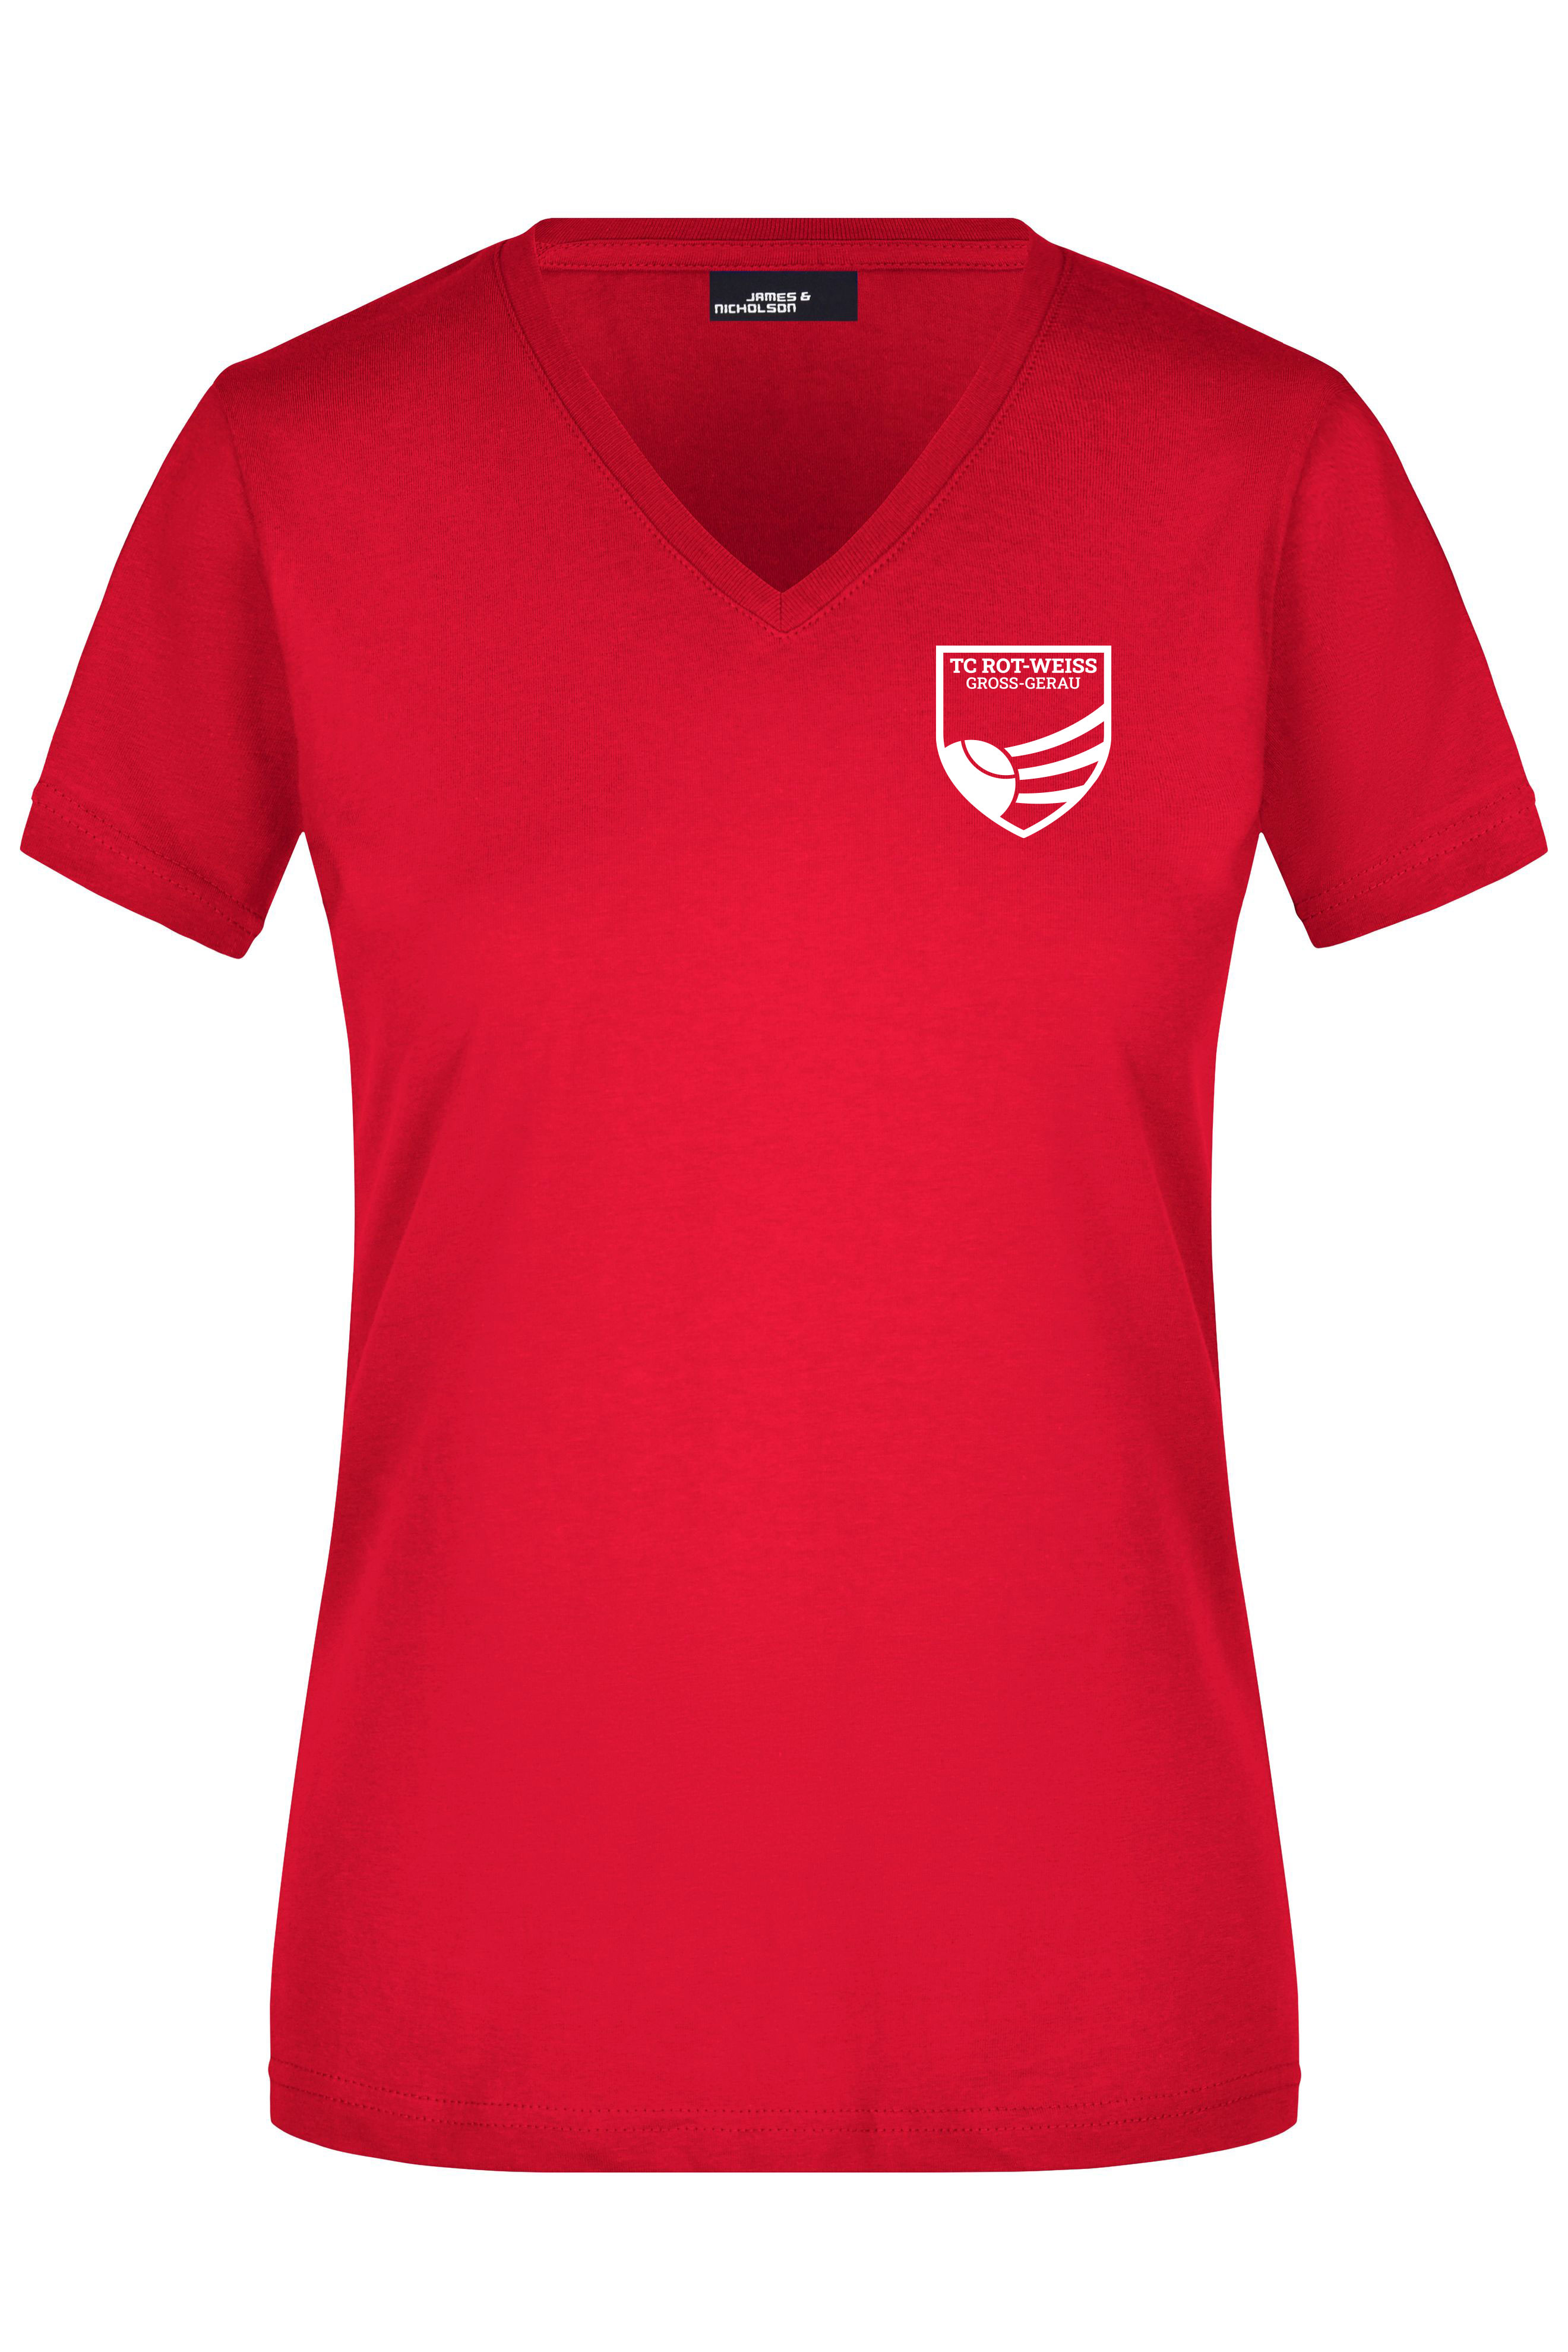 TC Rot-Weiss - Vorteil Dein Name - Girly T-Shirt weiss auf rot